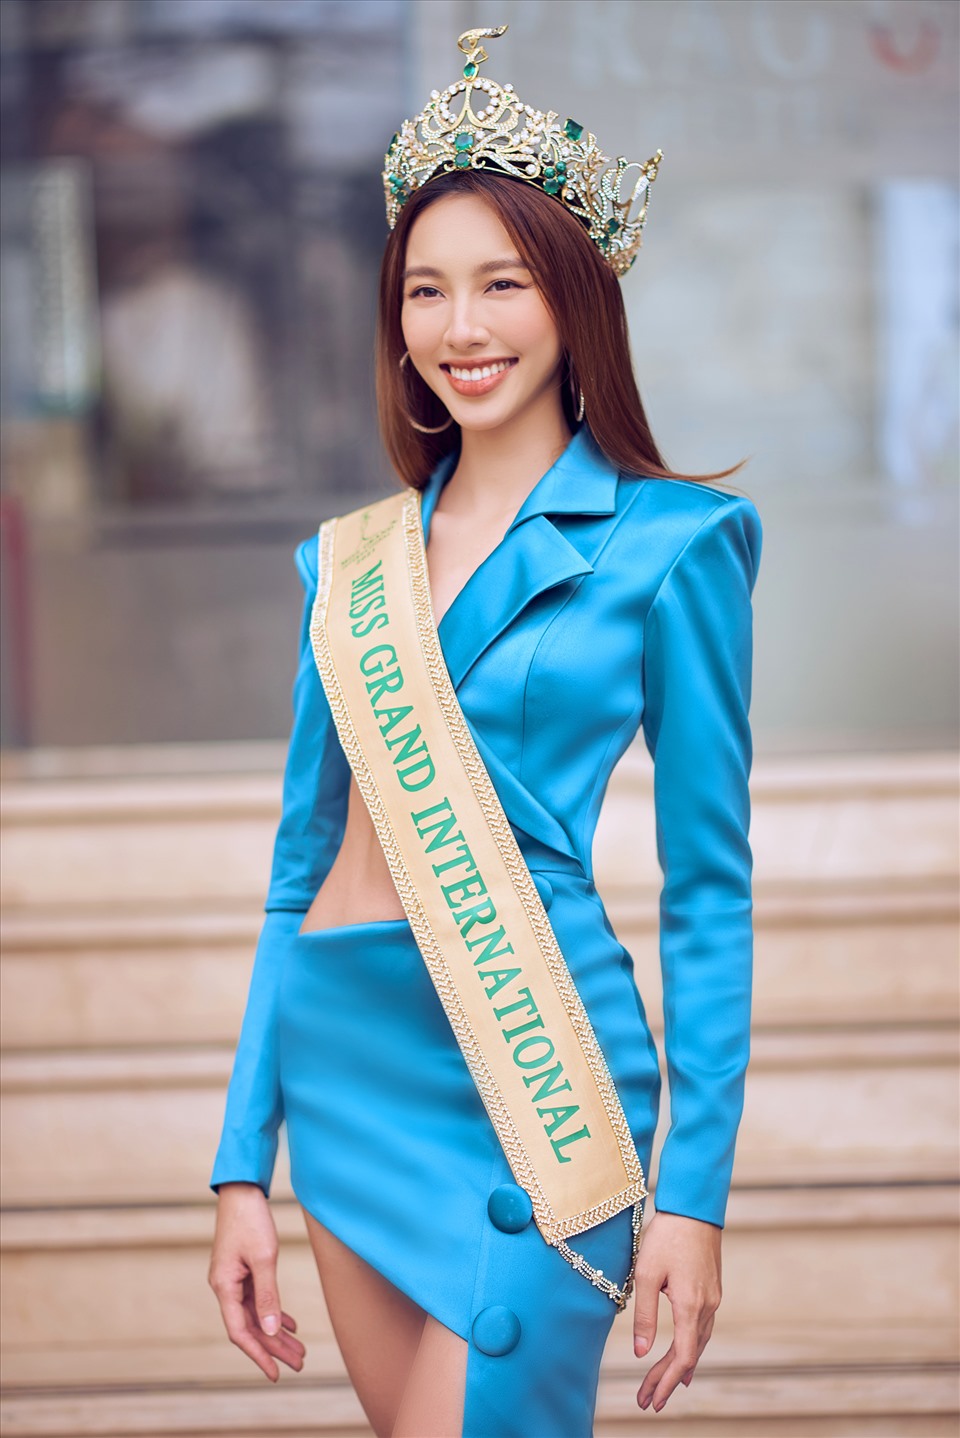 Hoa hậu Hòa bình Quốc tế là niềm kiêu hãnh của người Việt, một guồng phục vụ cho các hoạt động nhân đạo trên toàn cầu. Chúng tôi xin giới thiệu với bạn những người đẹp tài năng và nổi tiếng nhất trong giới Hoa hậu Hòa bình Quốc tế.